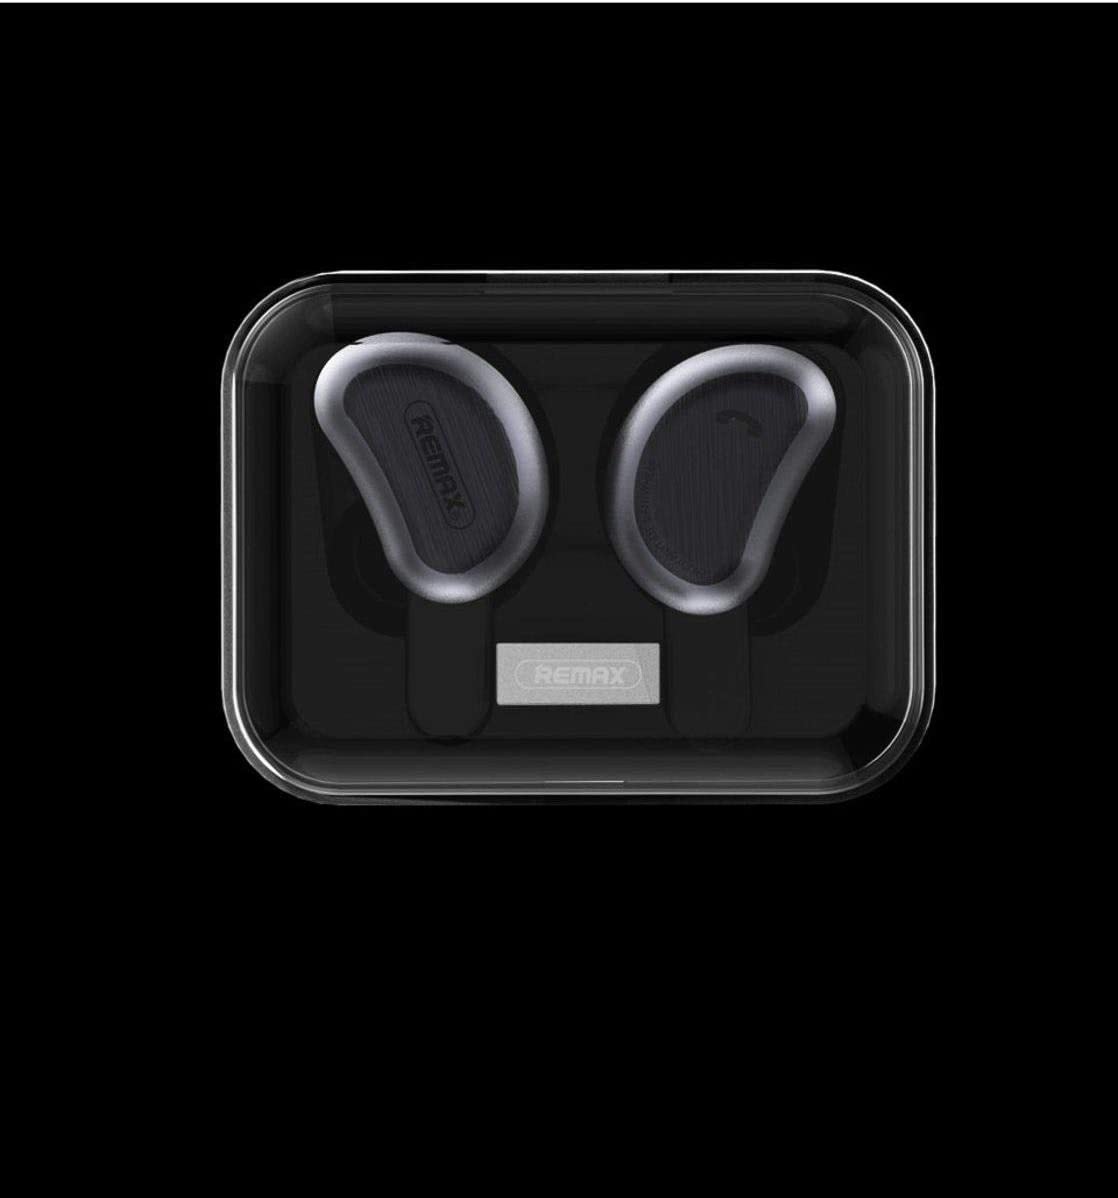 Écouteurs sans fil Bluetooth Écouteurs intra-auriculaires Remax Tws-1